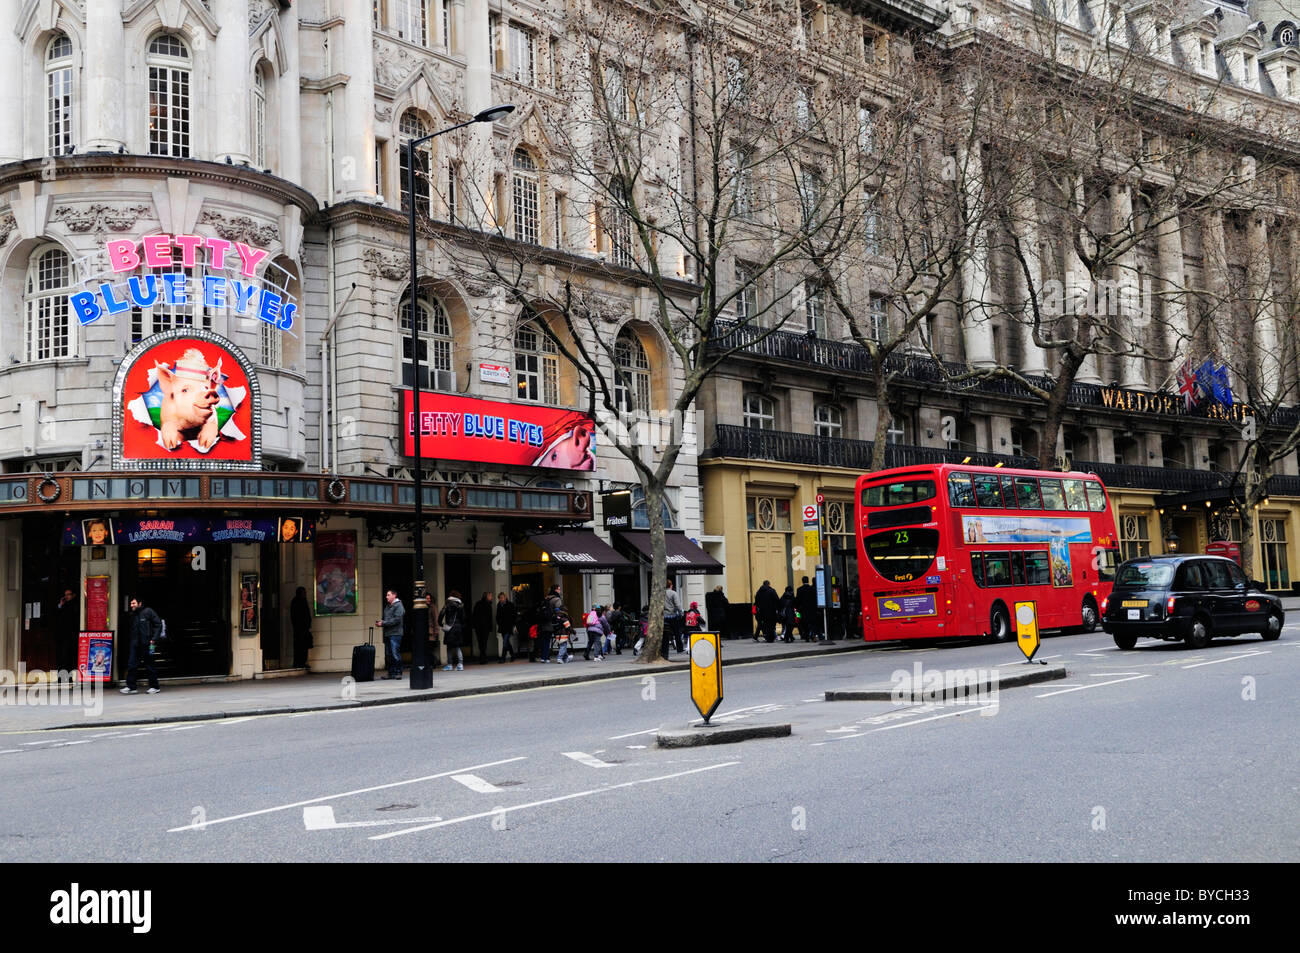 Scène de rue avec le Novello Theatre et hôtel Waldorf, Aldwych, London, England, UK Banque D'Images